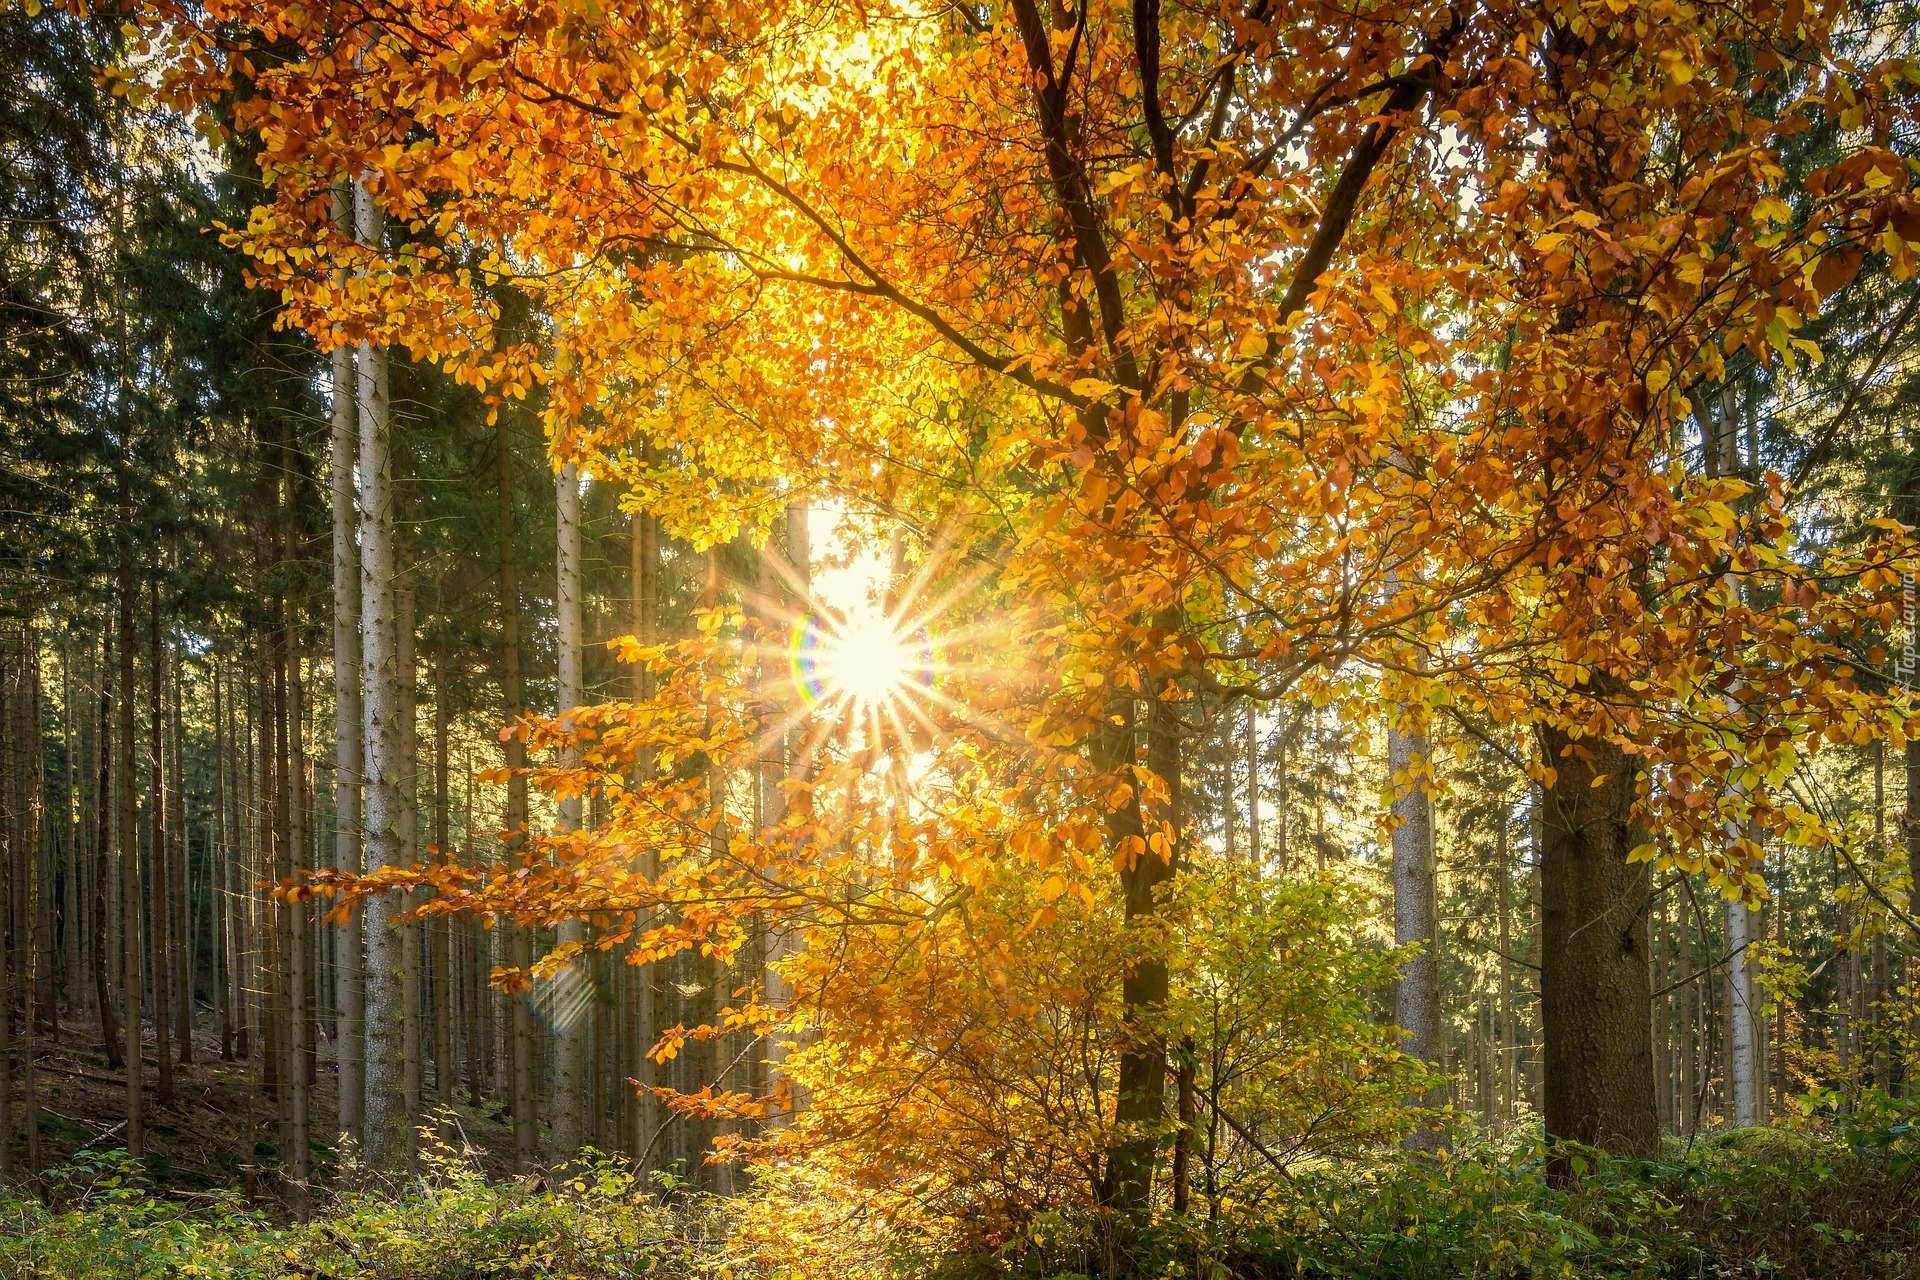 Las, Promienie słońca, Drzewa, Liście, Jesień